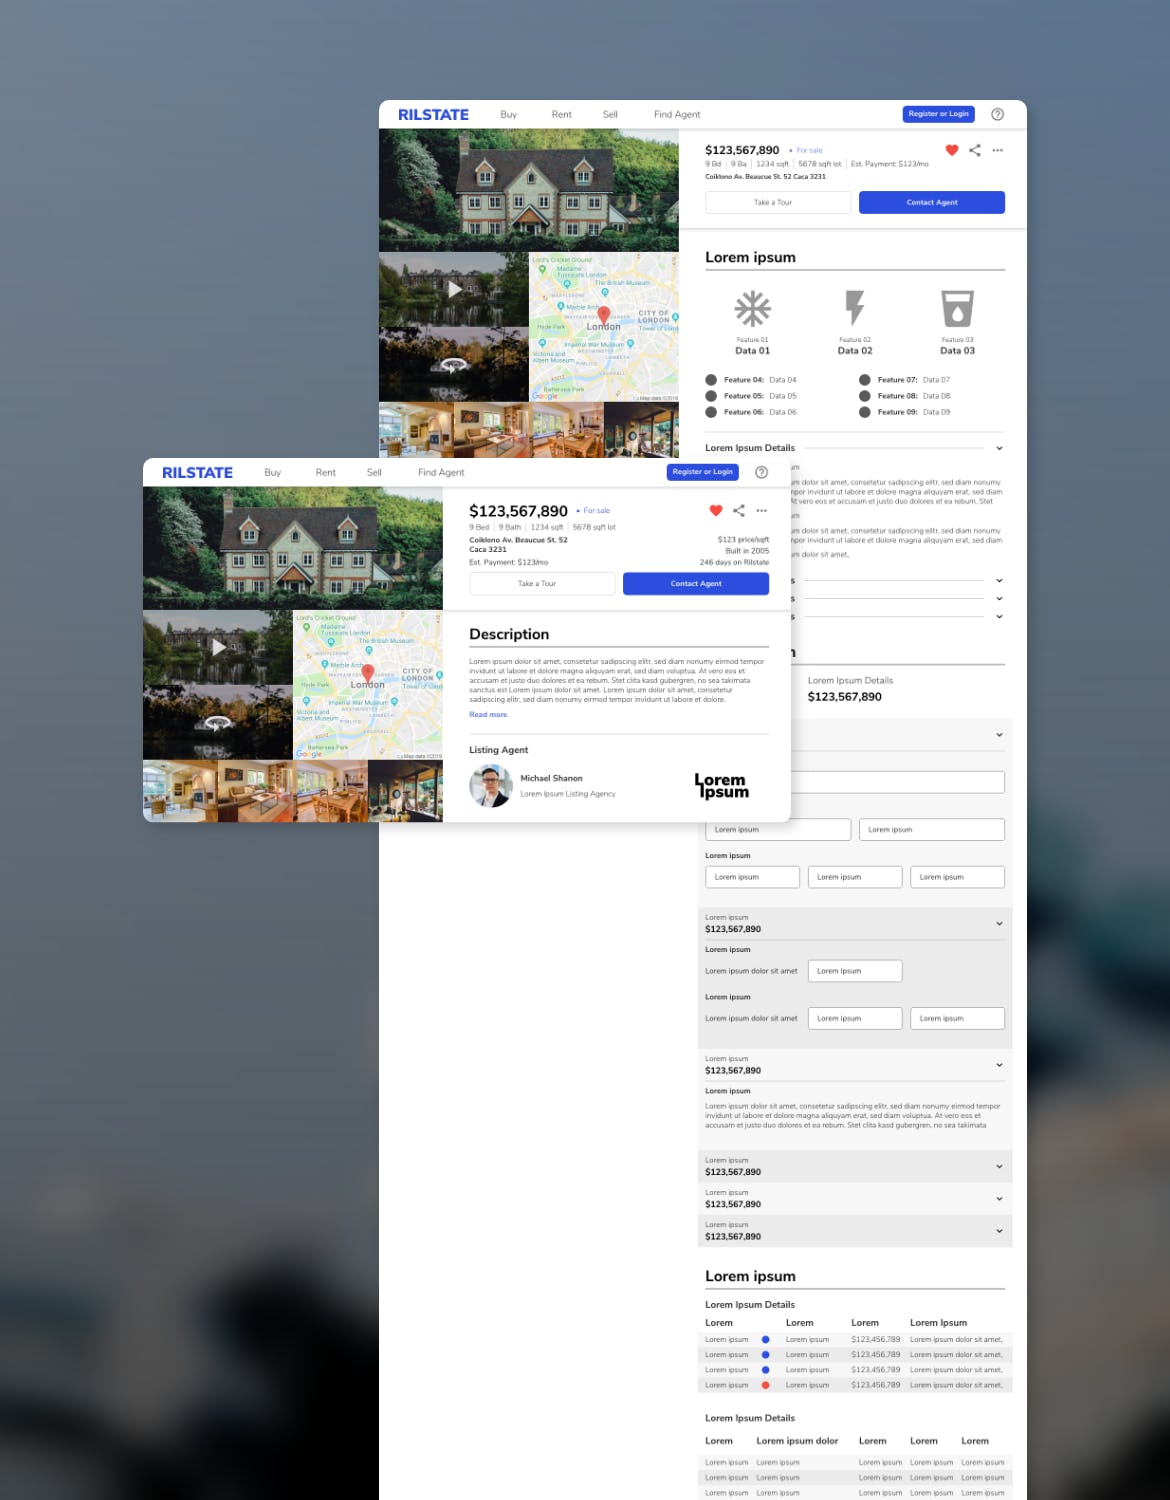 房地产租赁销售网站设计HTML模板非凡图库精选 RILSTATE – Real Estate Homepage Template插图(4)